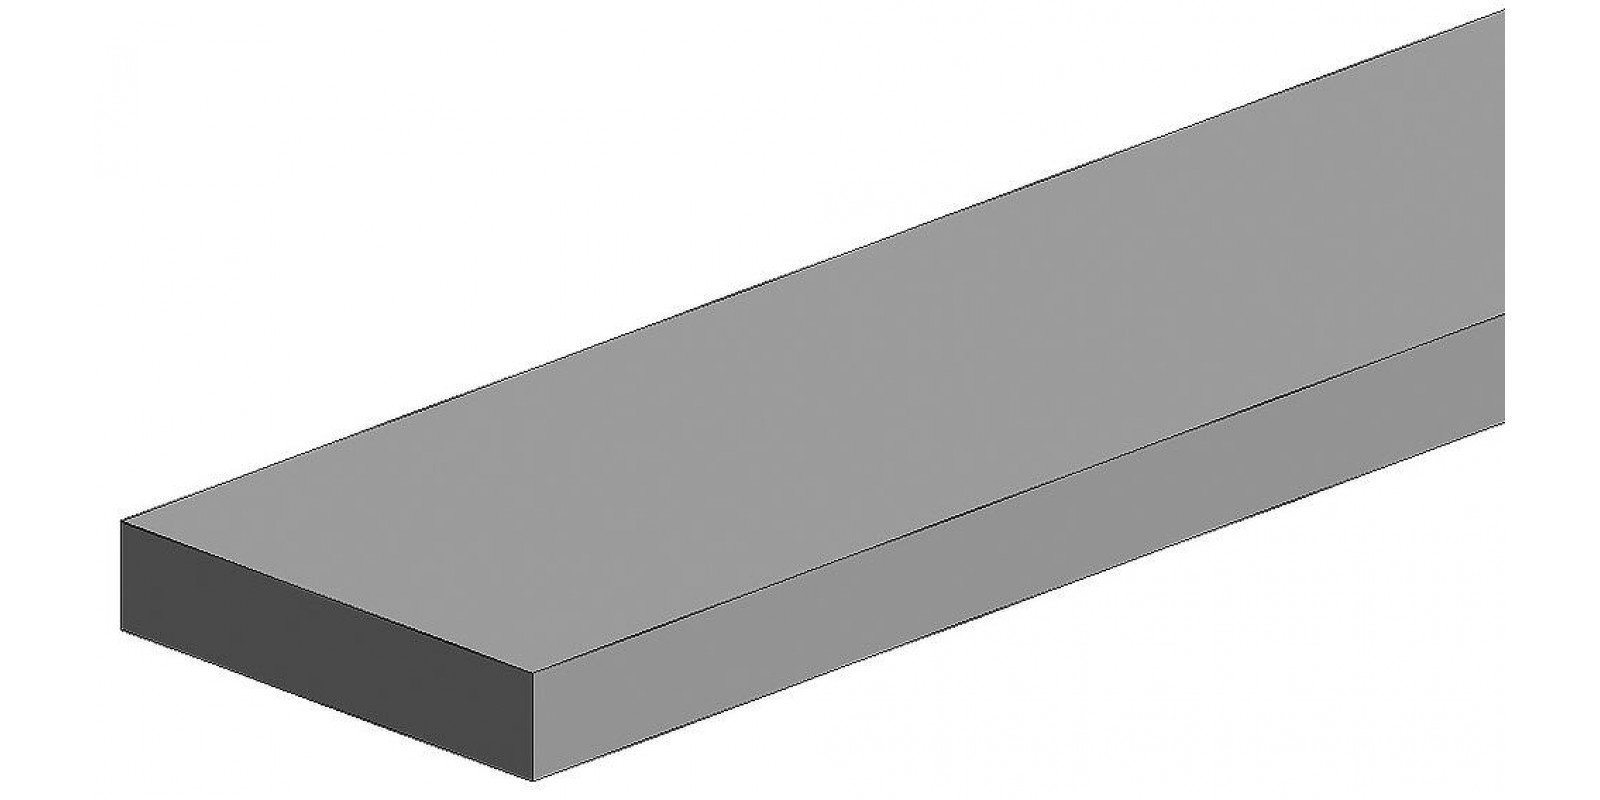 FA500104 White polystyrene square profile, 0.01